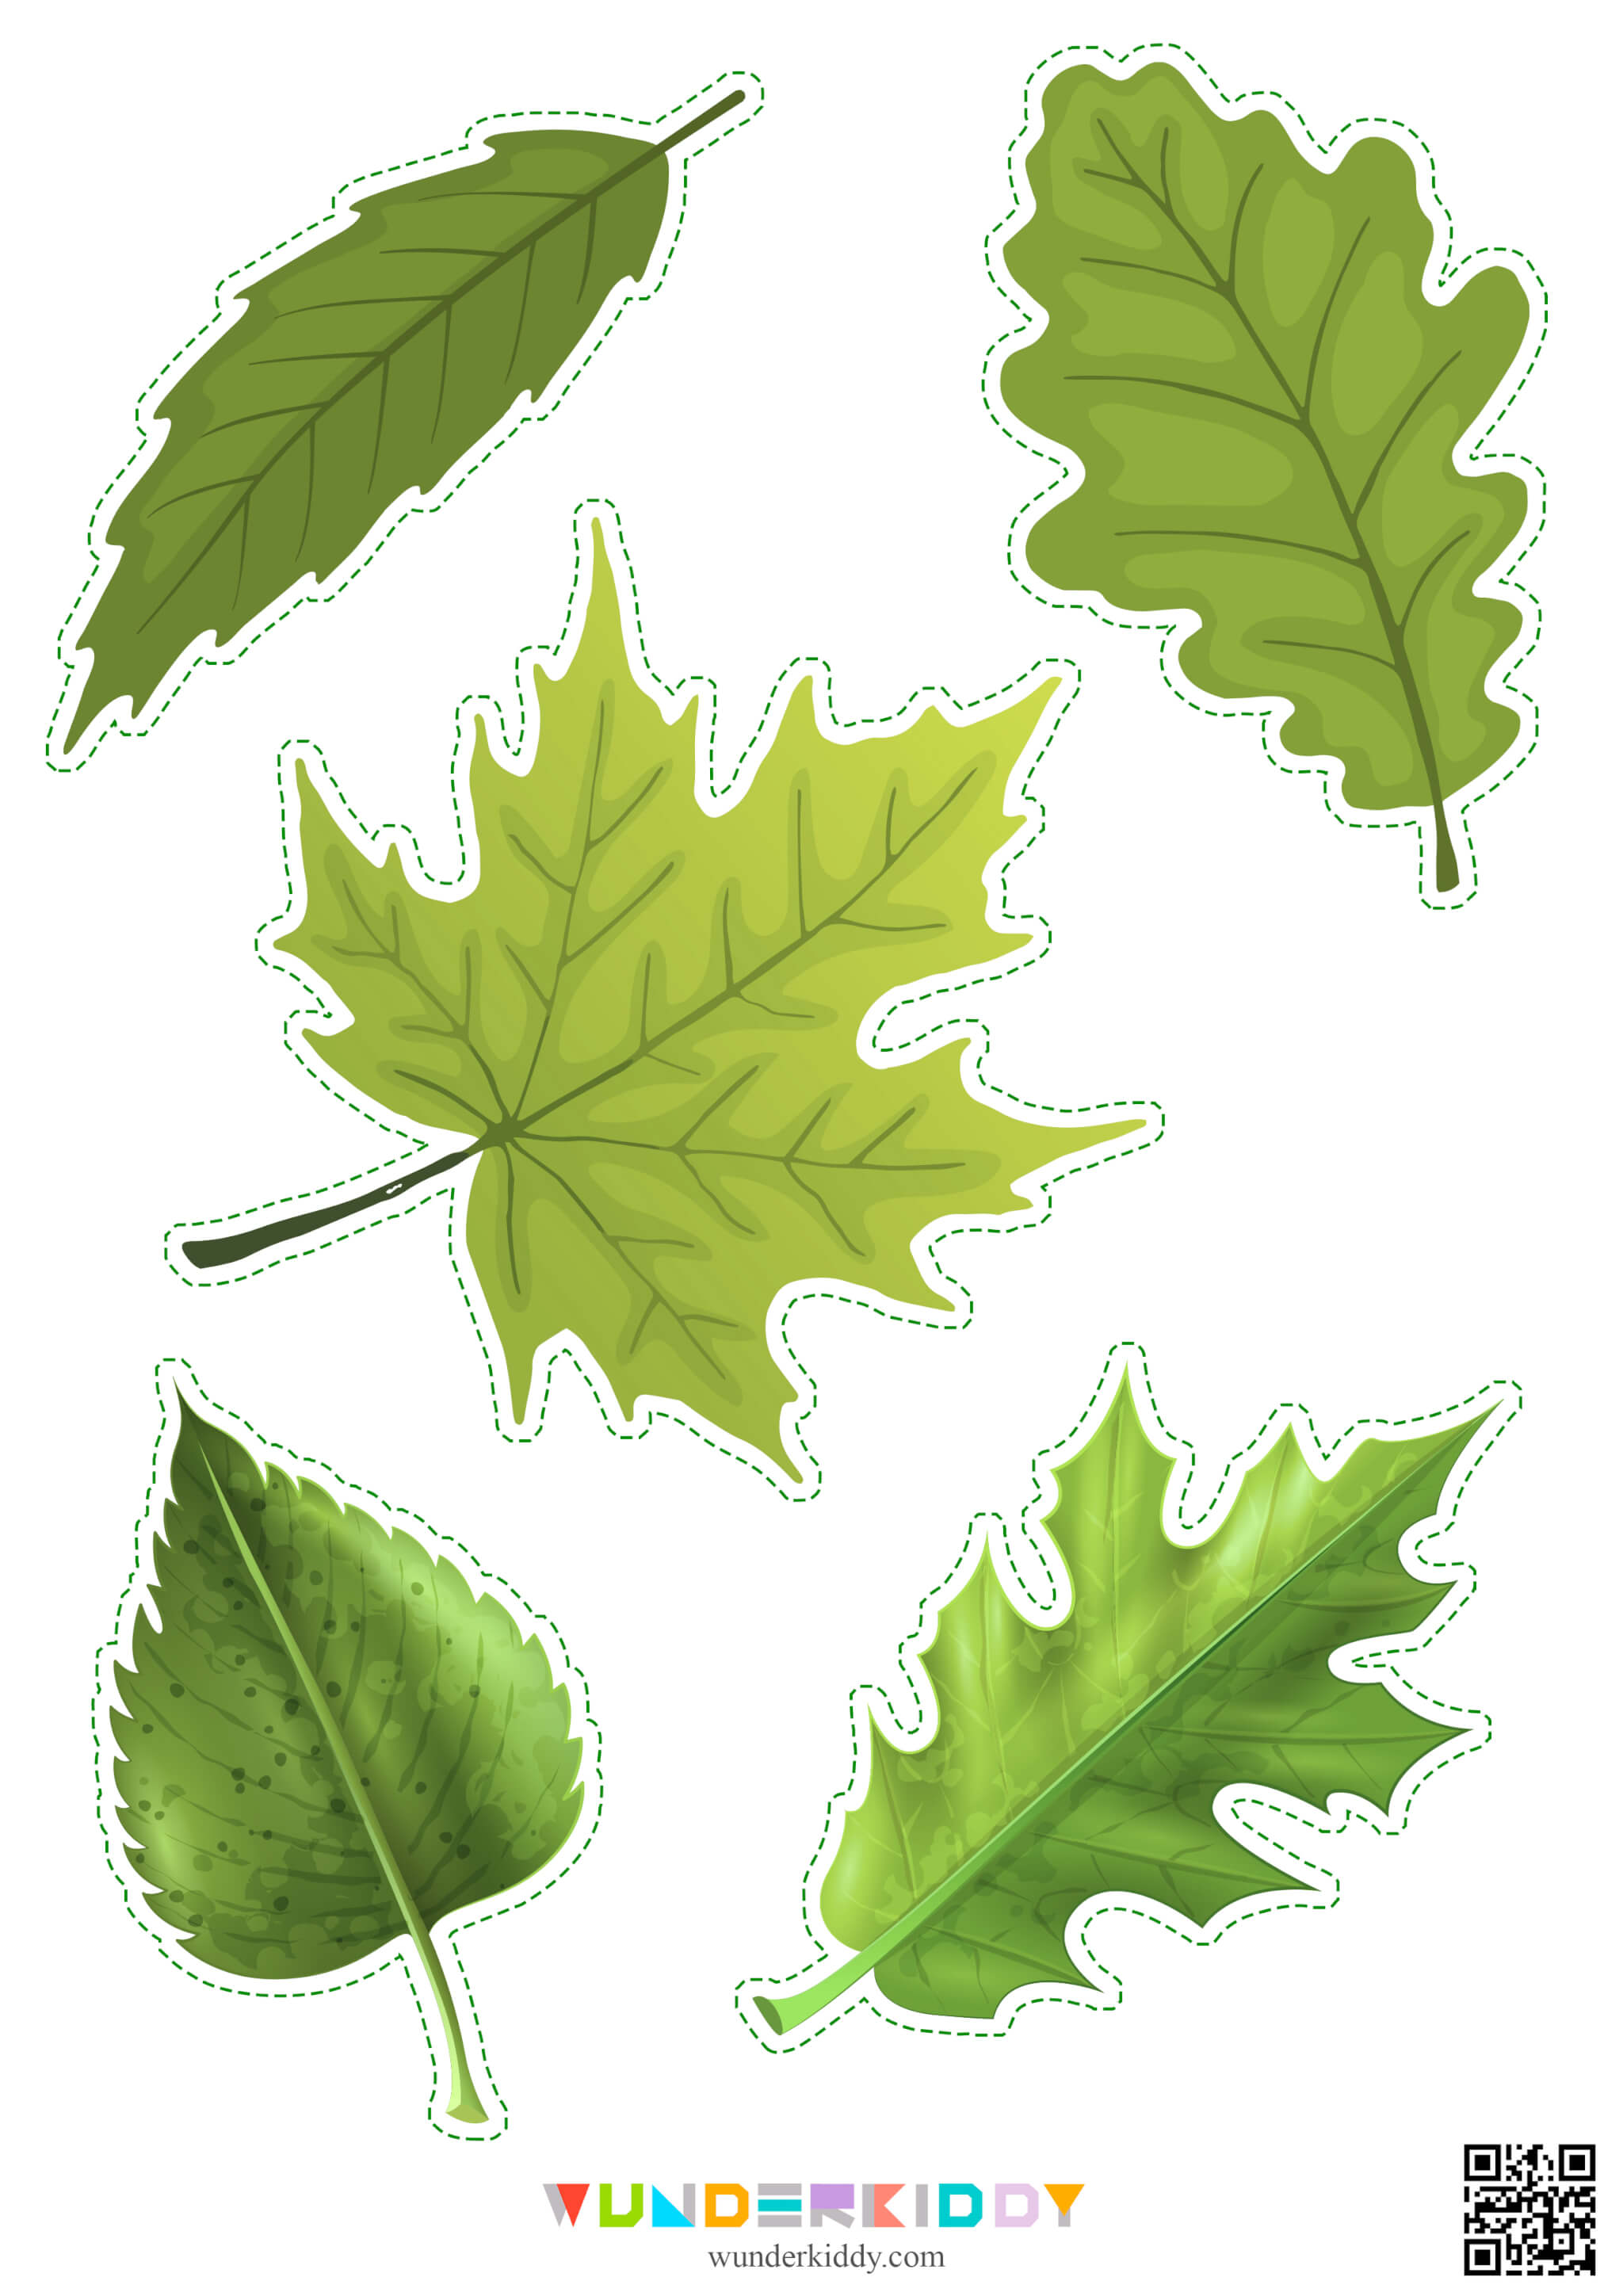 Activity sheet «Leaf sorting» - Image 6